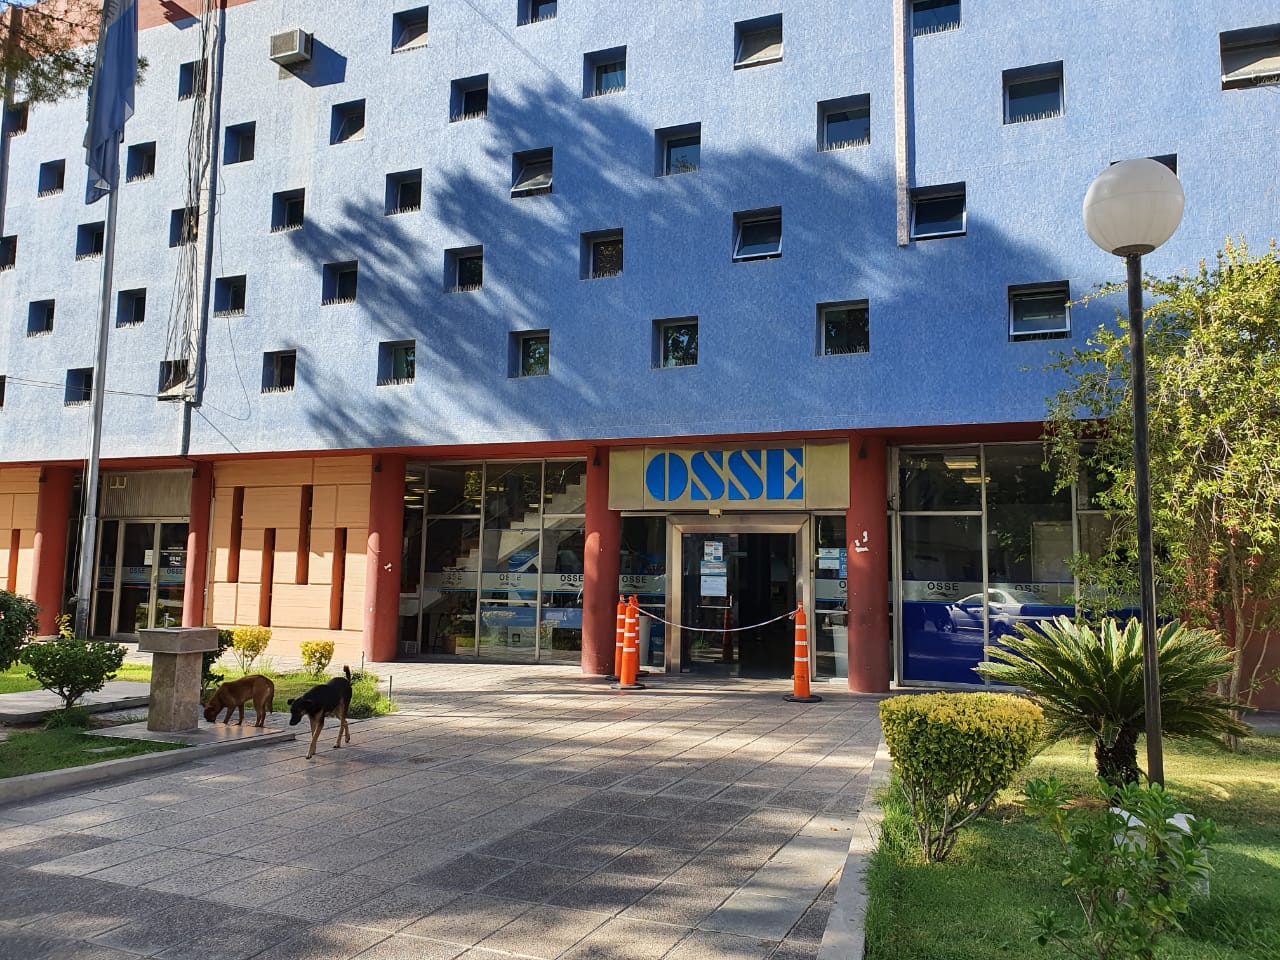 OSSE - Centro de Prensa